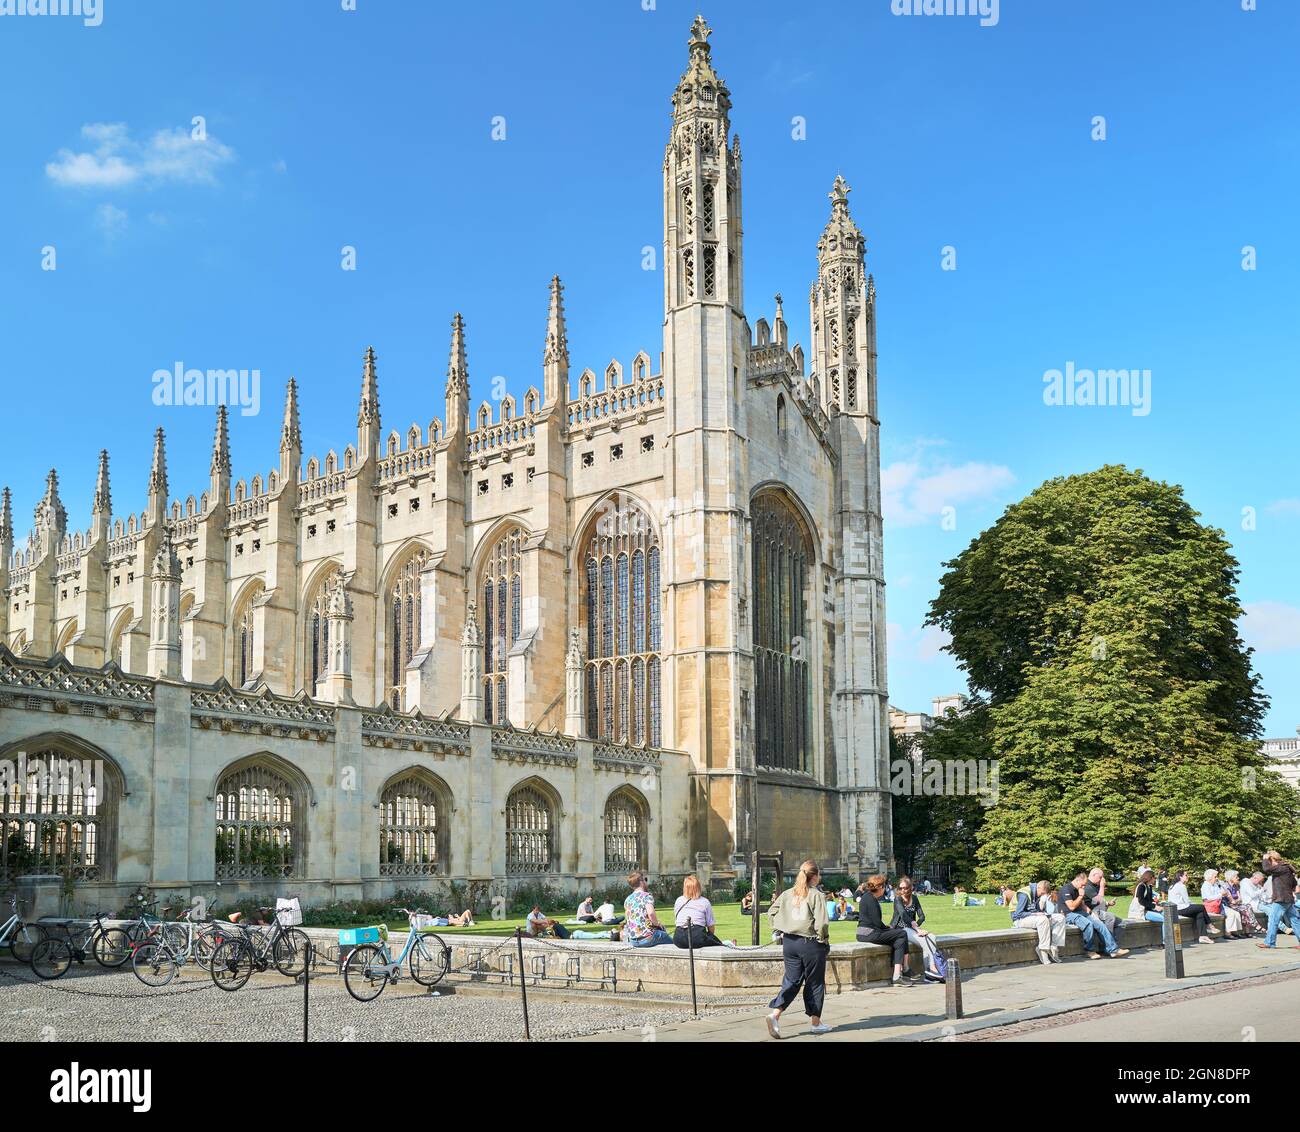 De nombreux touristes s'assoient et se détendent sur le mur inférieur à l'extérieur de la chapelle du King's College, université de Cambridge, Angleterre, lors d'une journée ensoleillée d'été. Banque D'Images